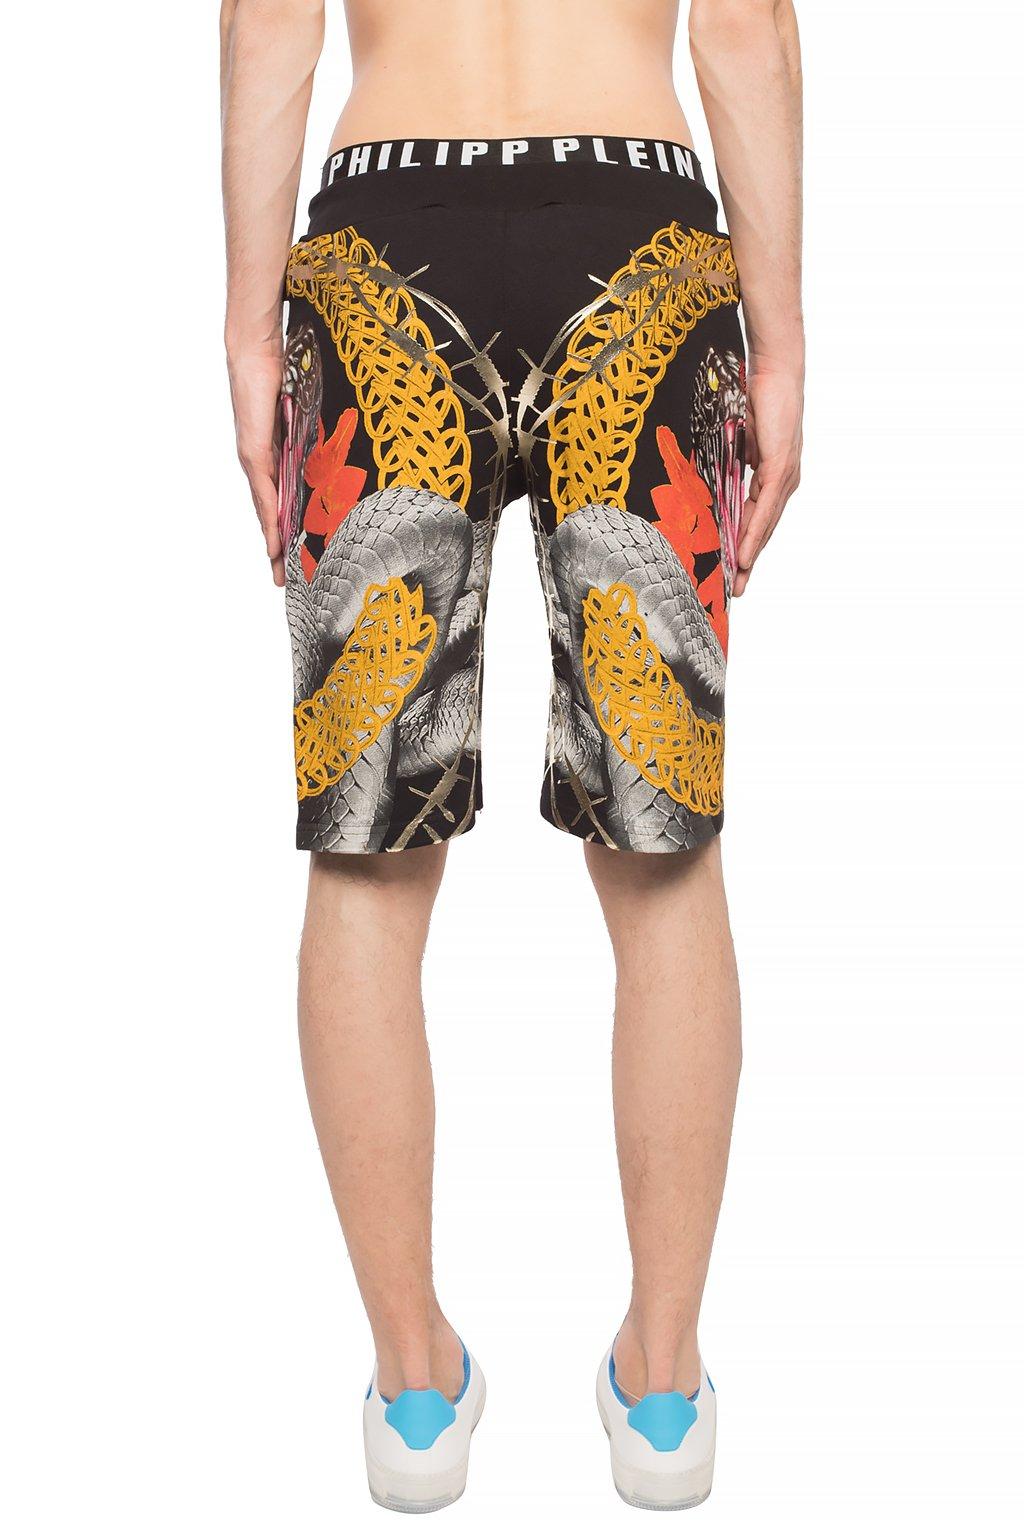 Philipp Plein Cotton Patterned Shorts Multicolour for Men - Lyst